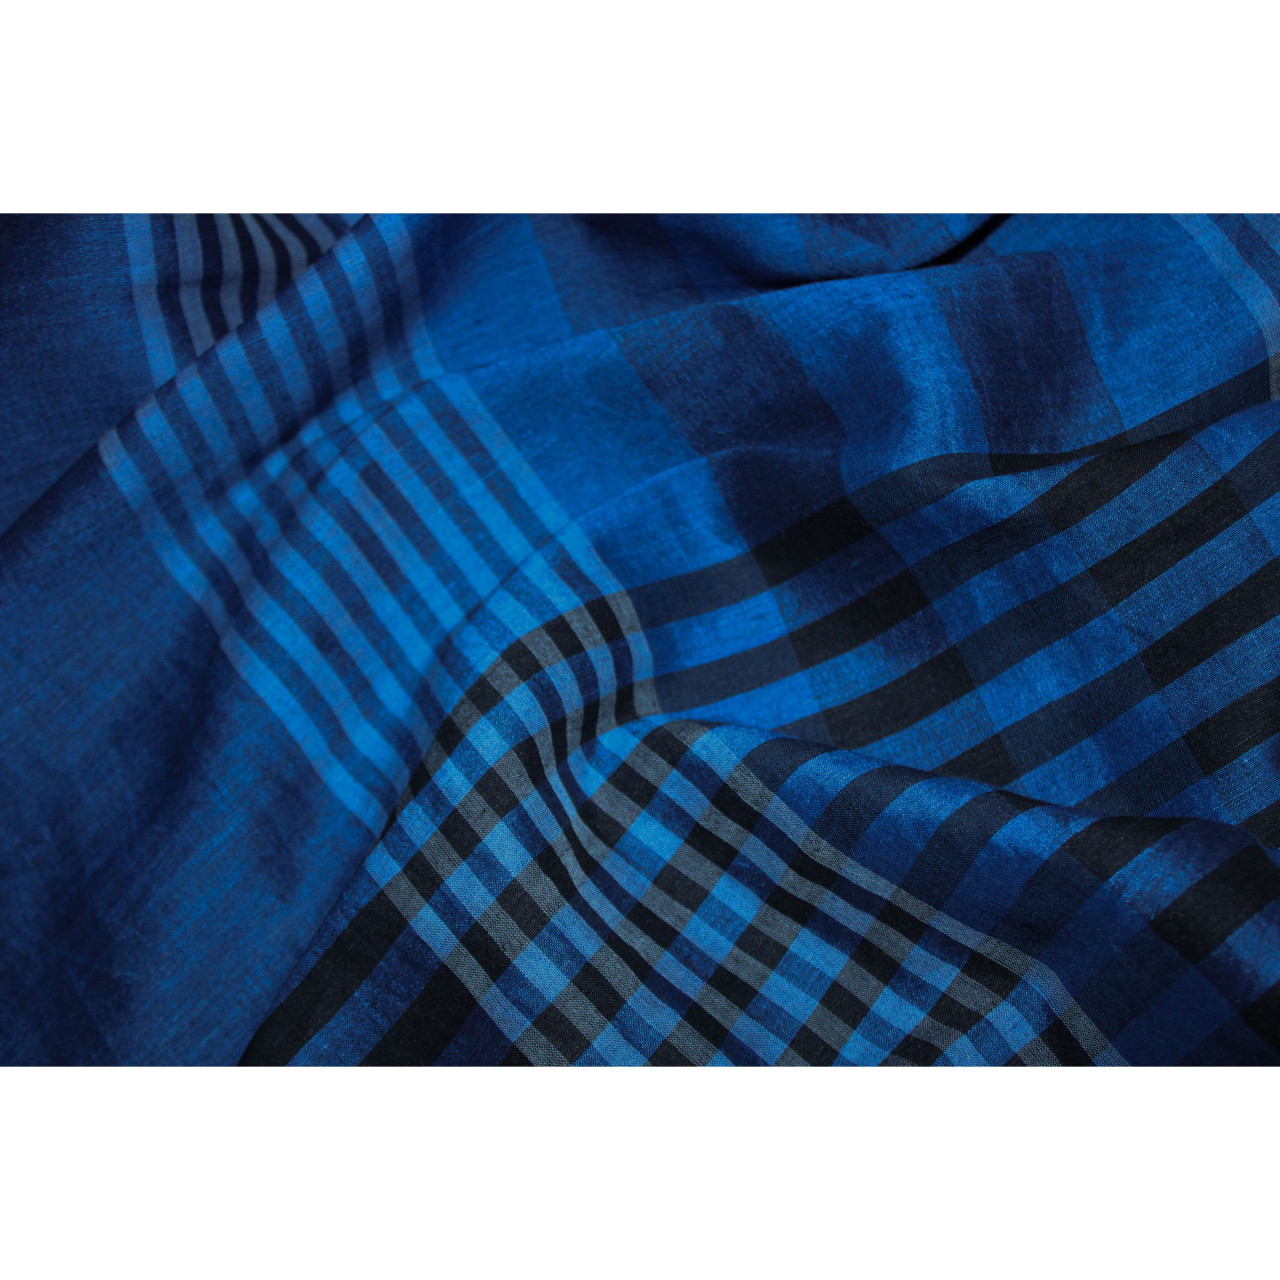 (2072) Khadi  and linen Azo-free dyed stole from Shantipur - Indigo, black, stripes, white